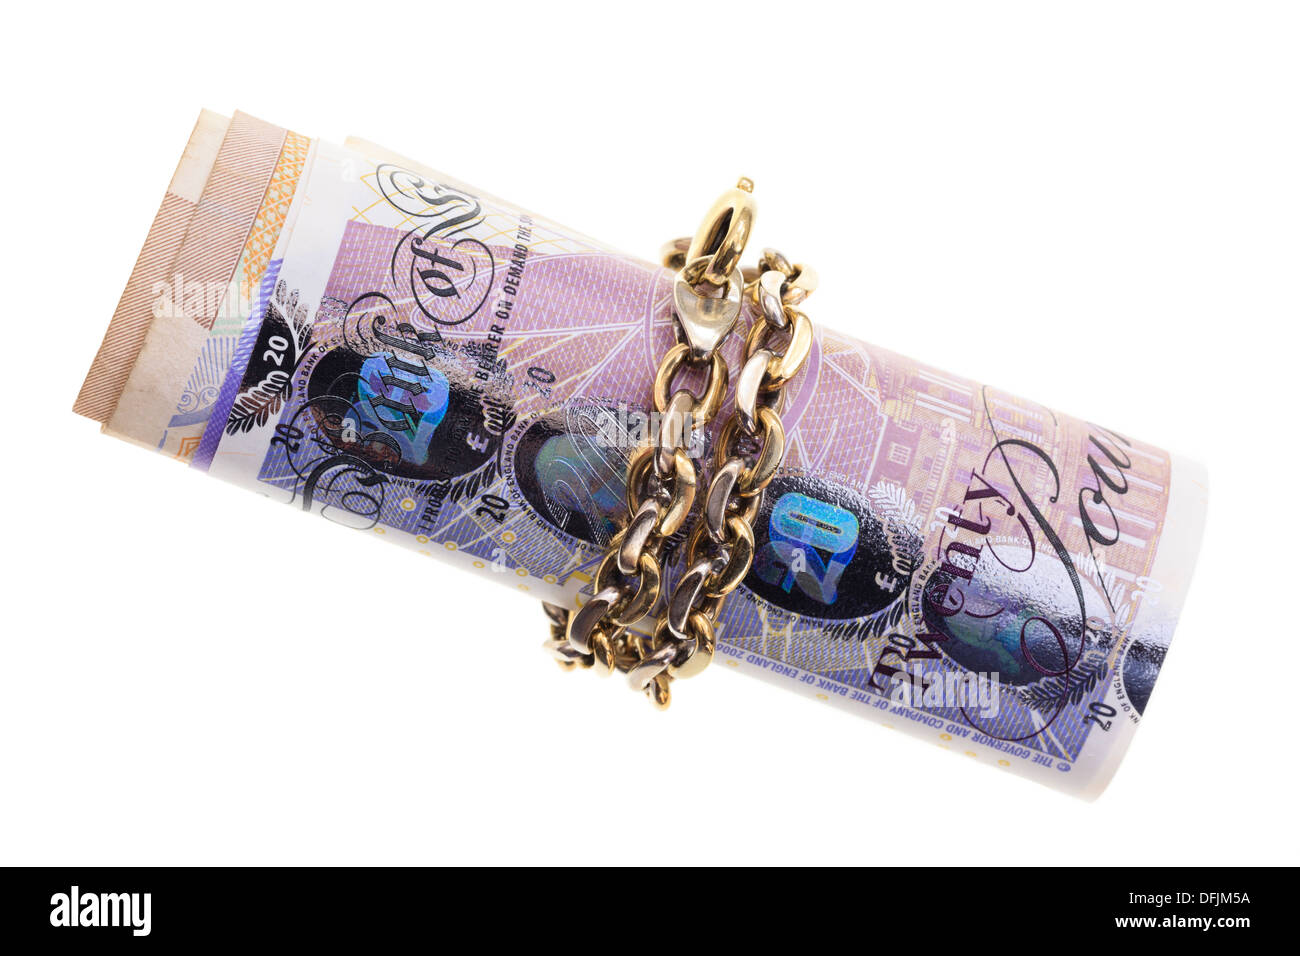 Libra esterlina británica observa atados en cadena de oro aislado sobre un fondo blanco, ahorrando dinero y en concepto de inversiones. Inglaterra Gran Bretaña Foto de stock